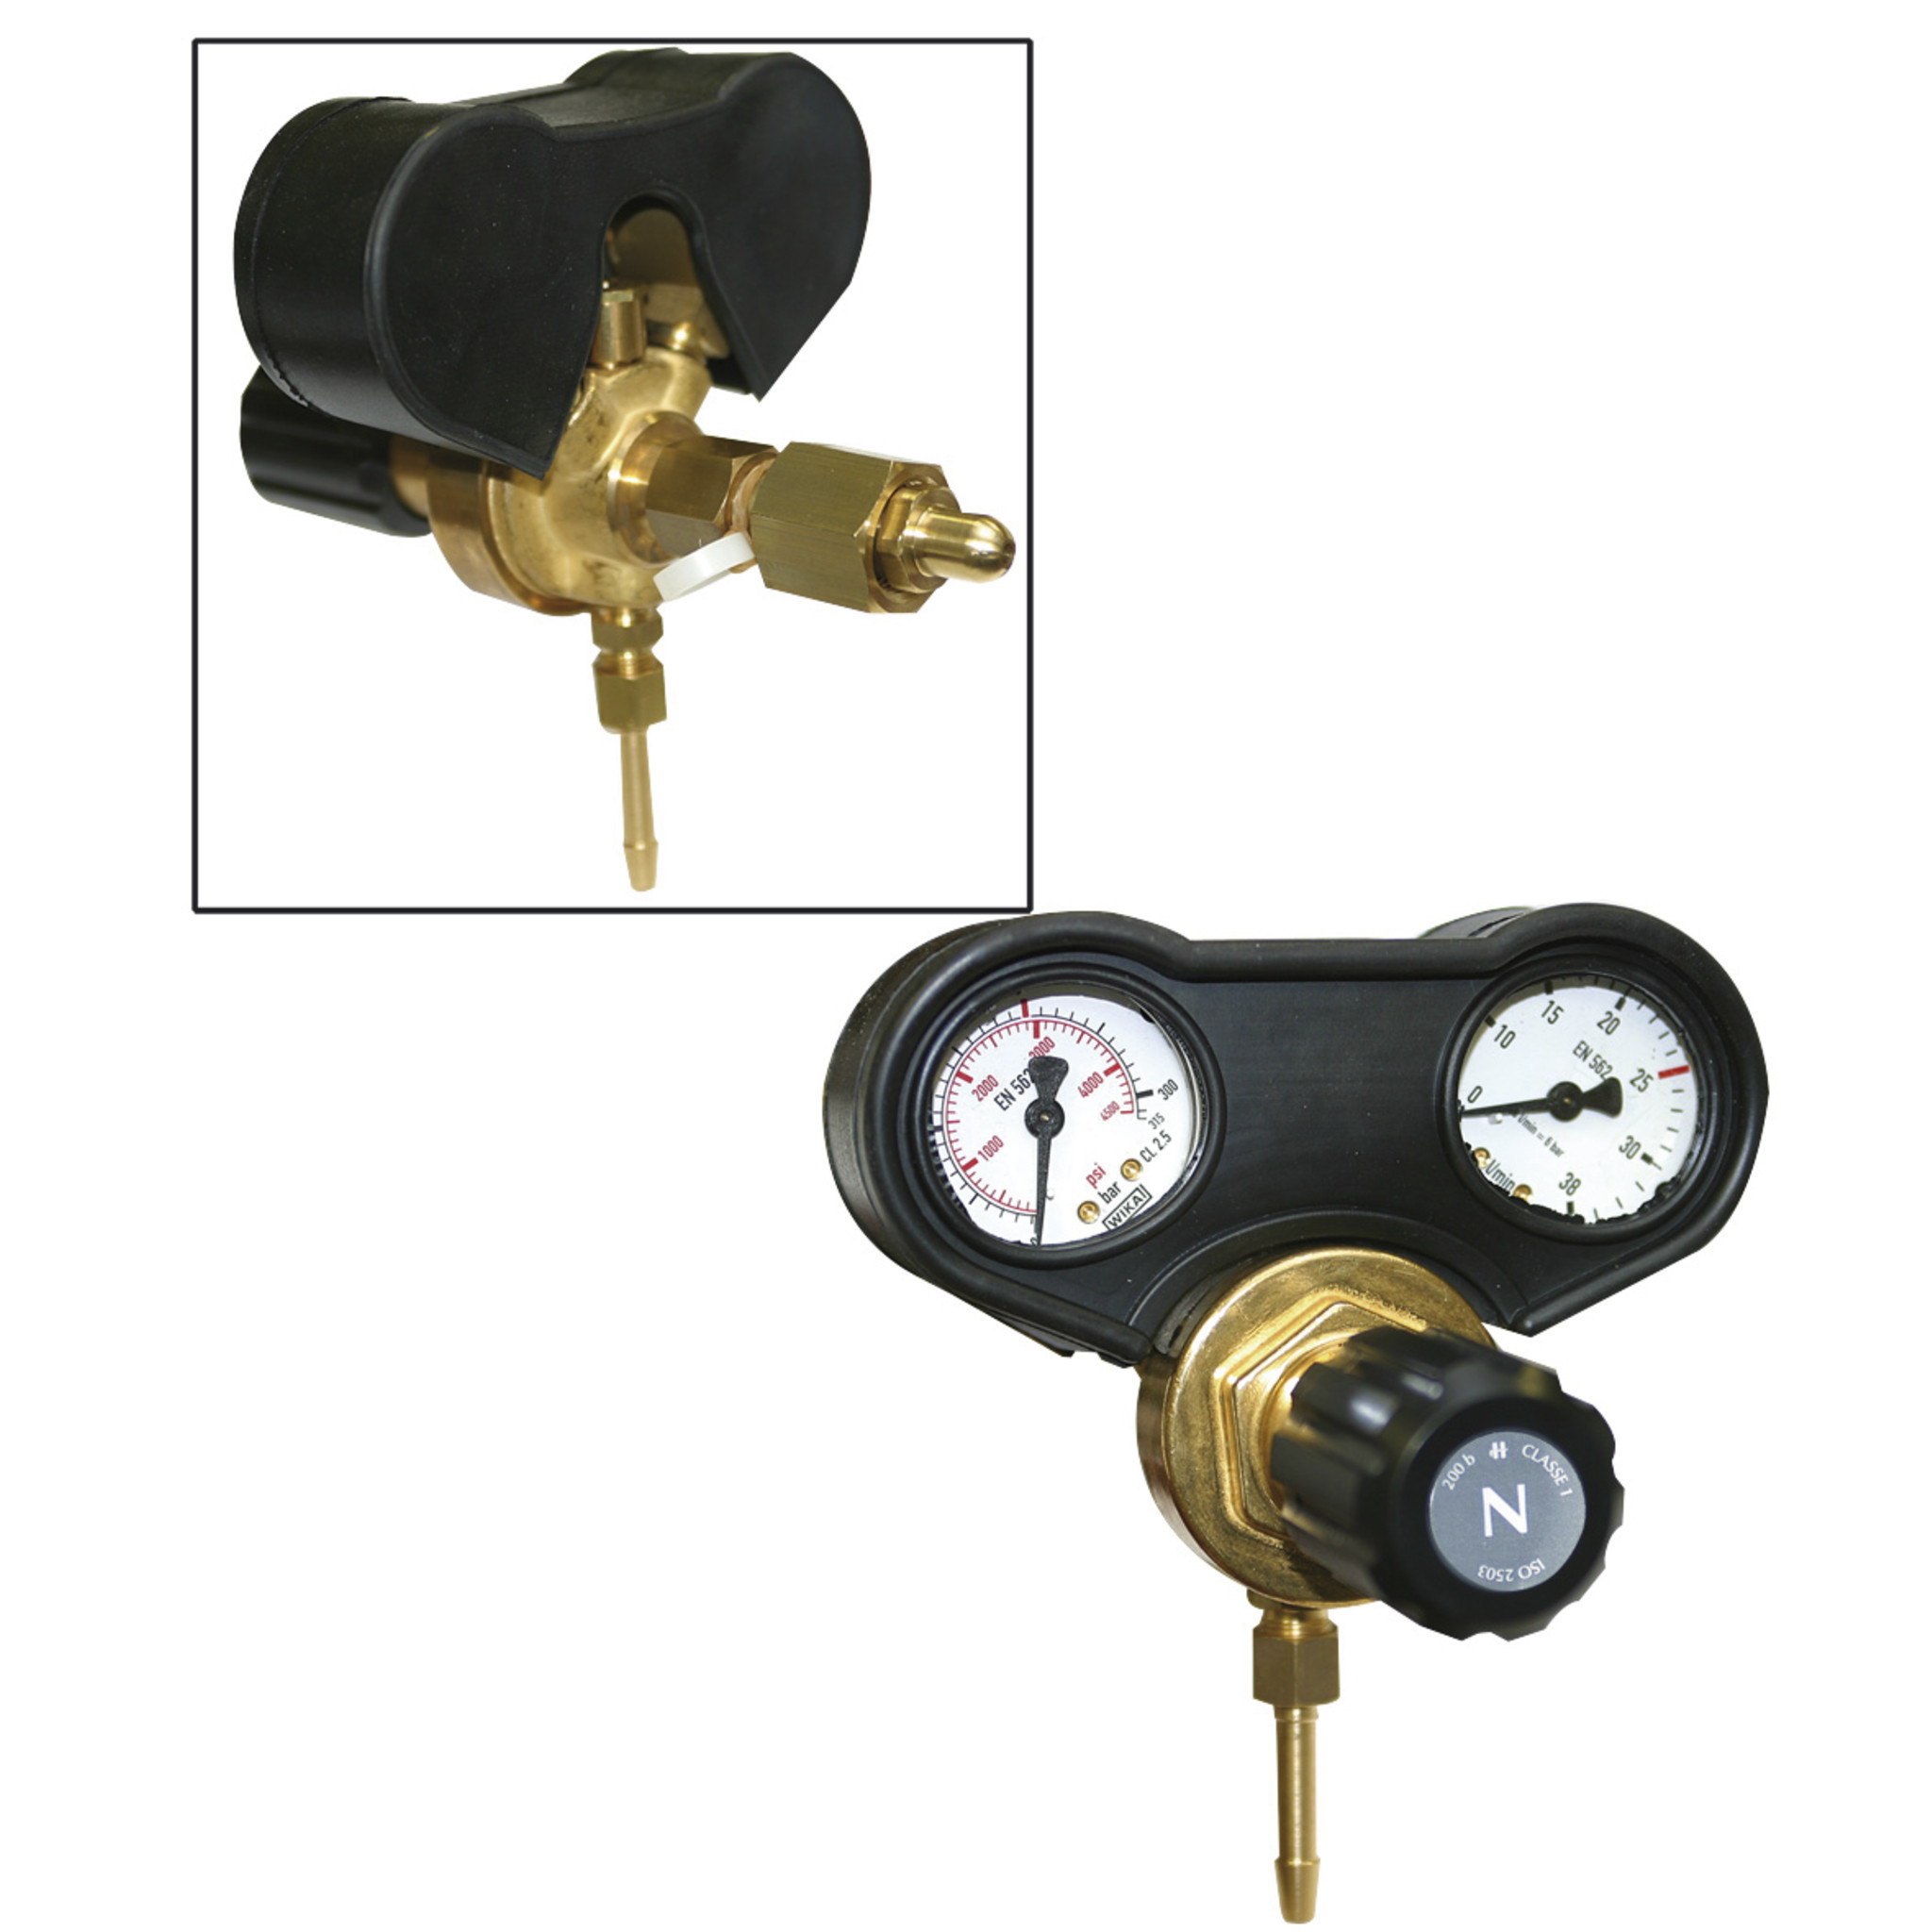 Billede af GYS Gas Manometer m/ dobbelt ventil ventiler med gummi for bedre beskyttelse